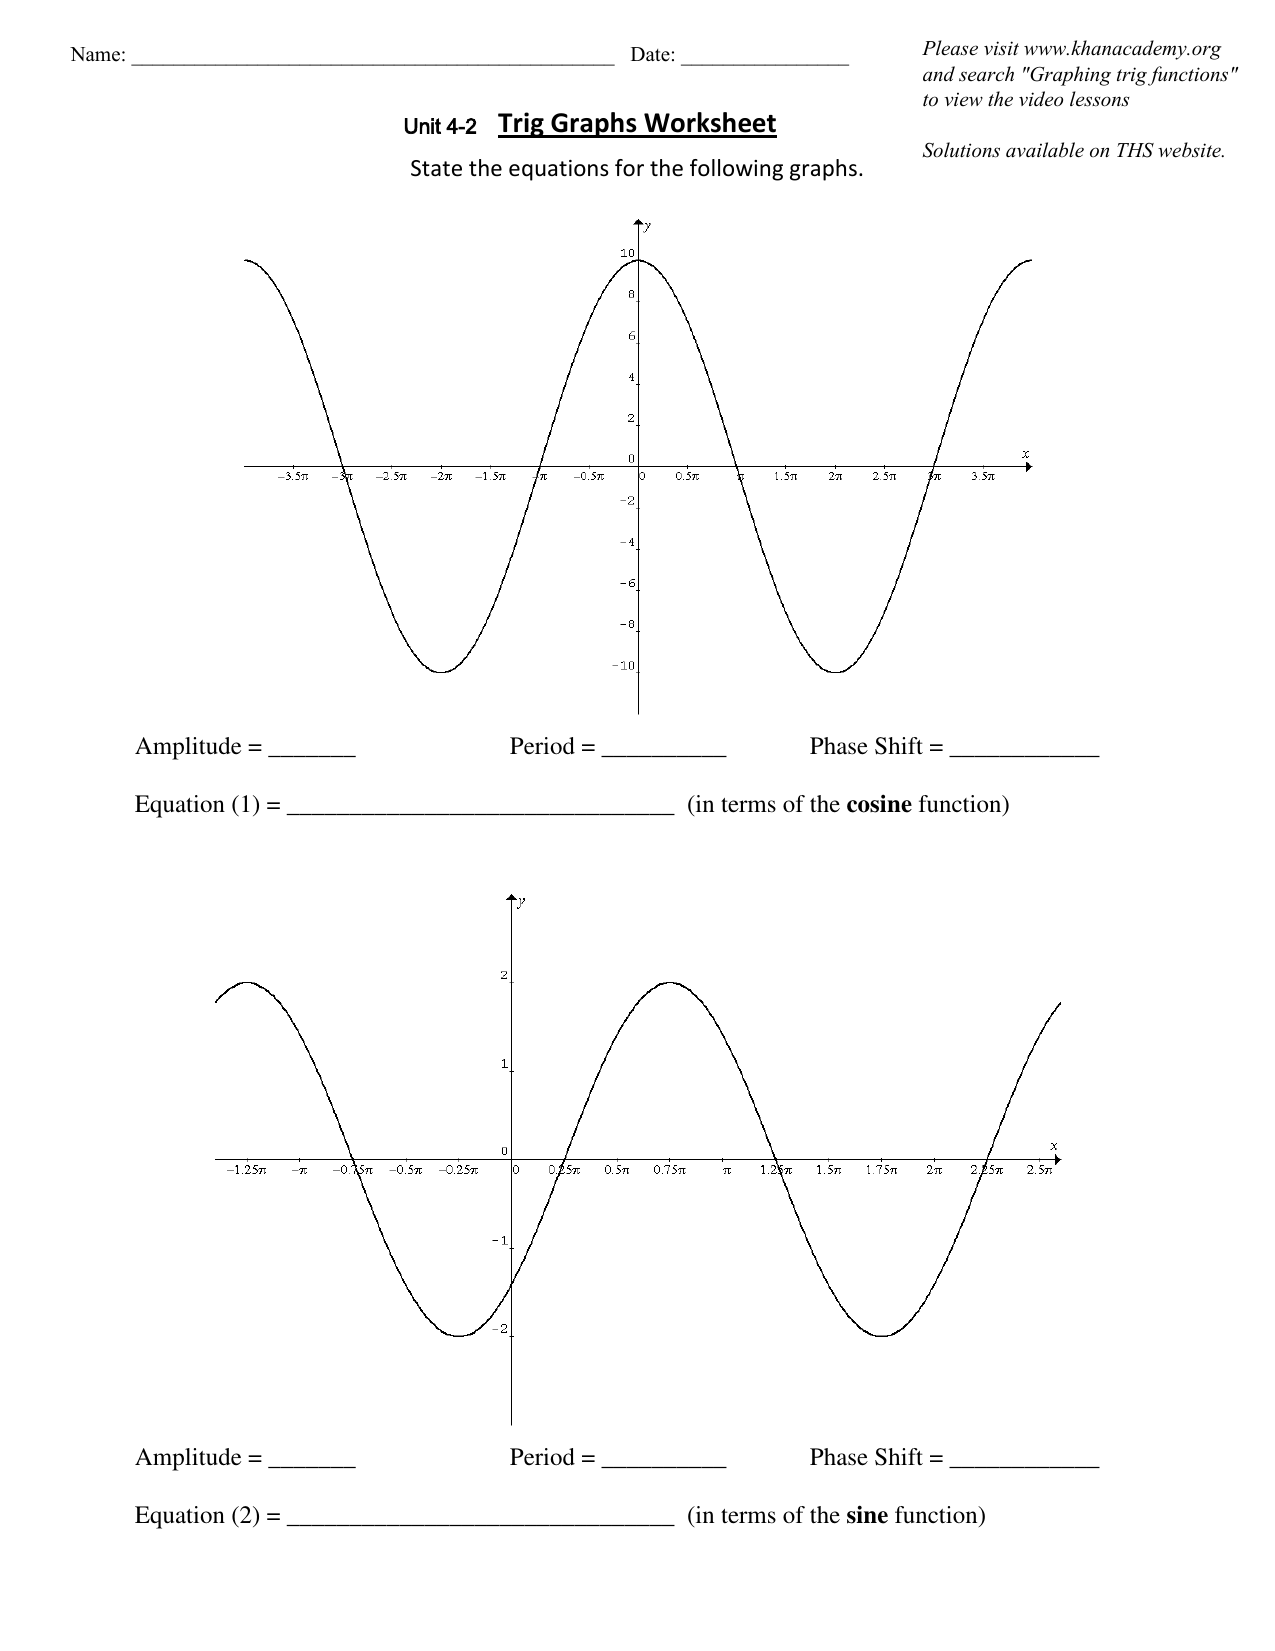 trig graphs worksheet pdf